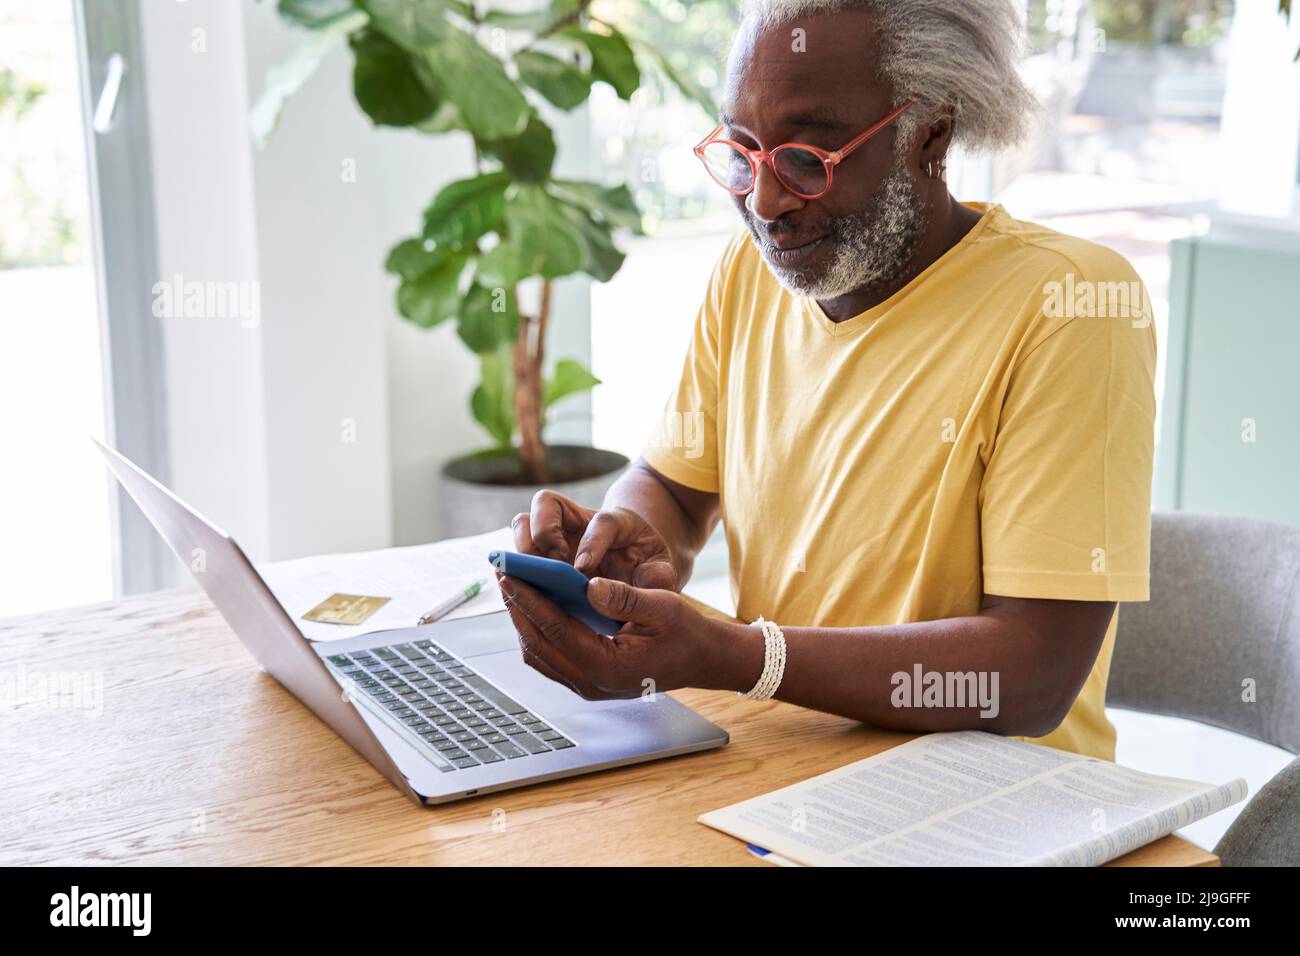 Uomo anziano che utilizza smartphone e laptop Foto Stock